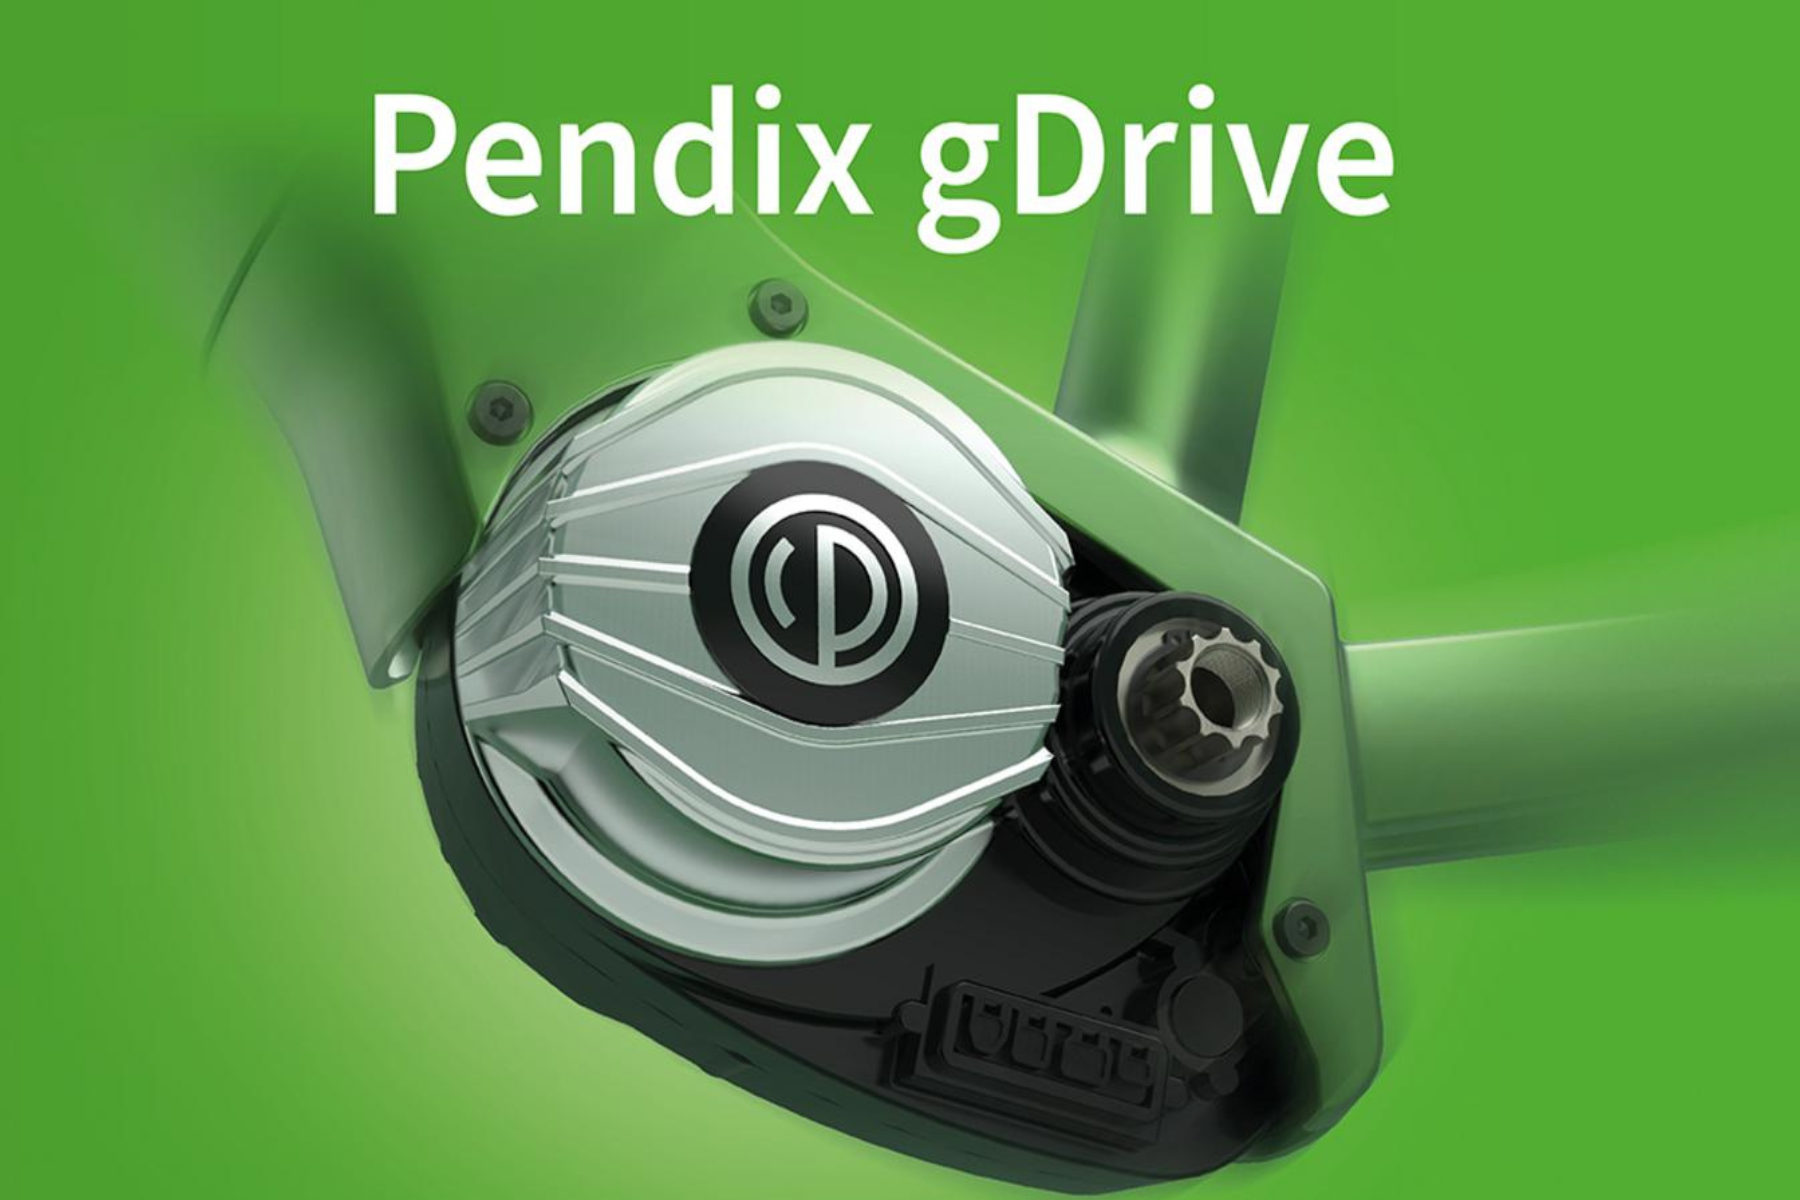 Interview mit Pendix CTO Christian Hennig: Pendix gDrive